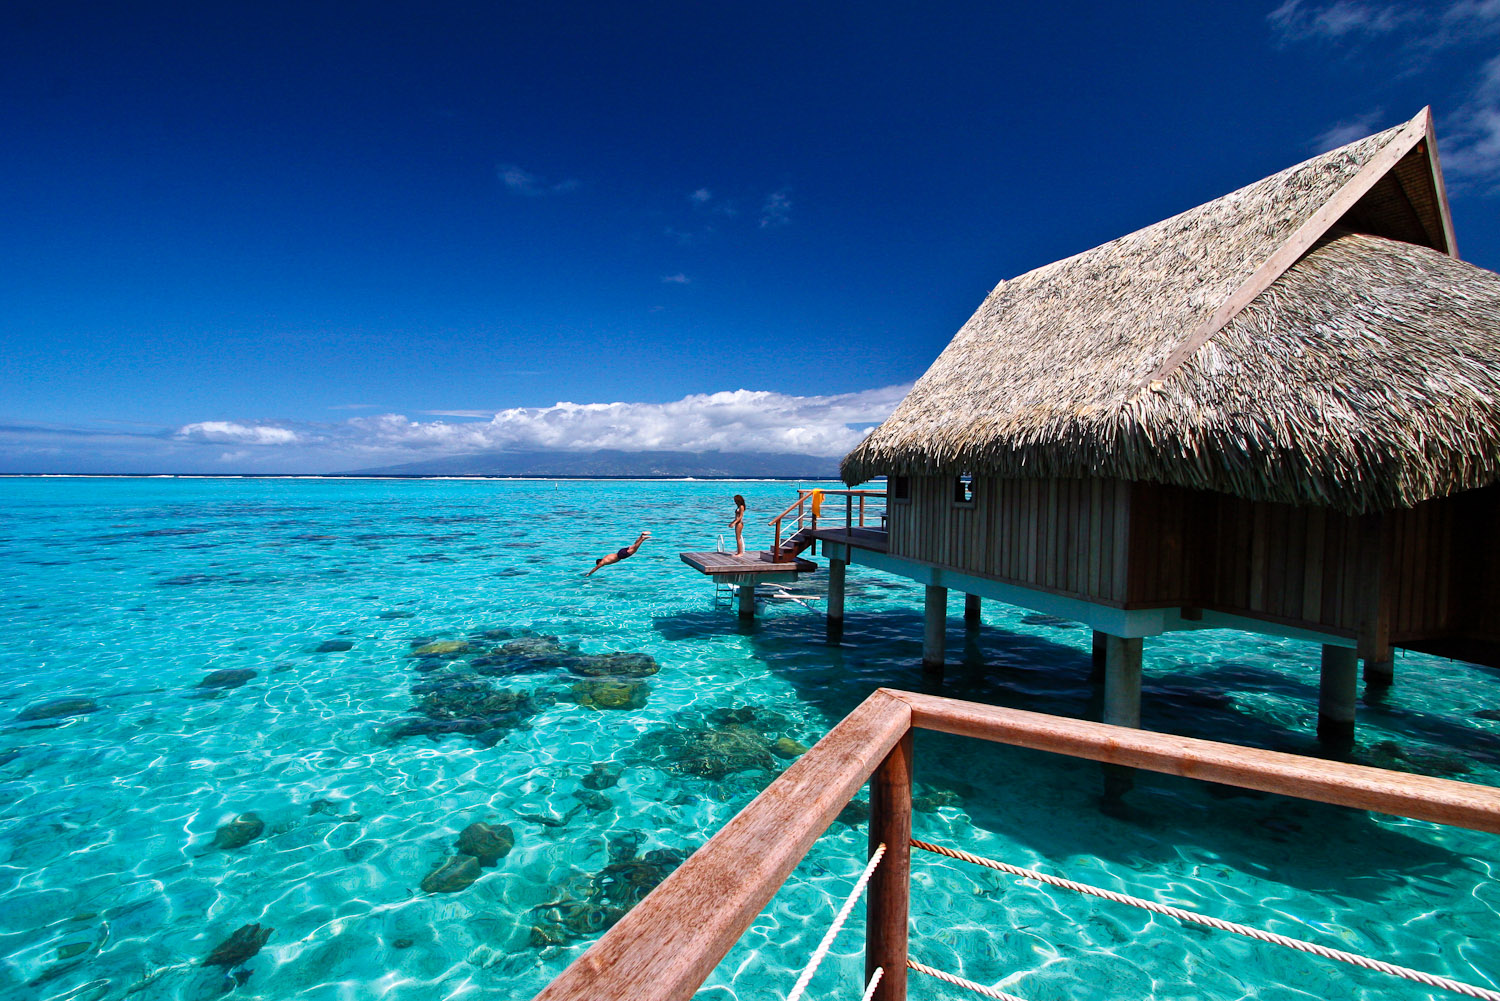 Sofitel Moorea Ia Ora Beach Resort, French Polynesia.